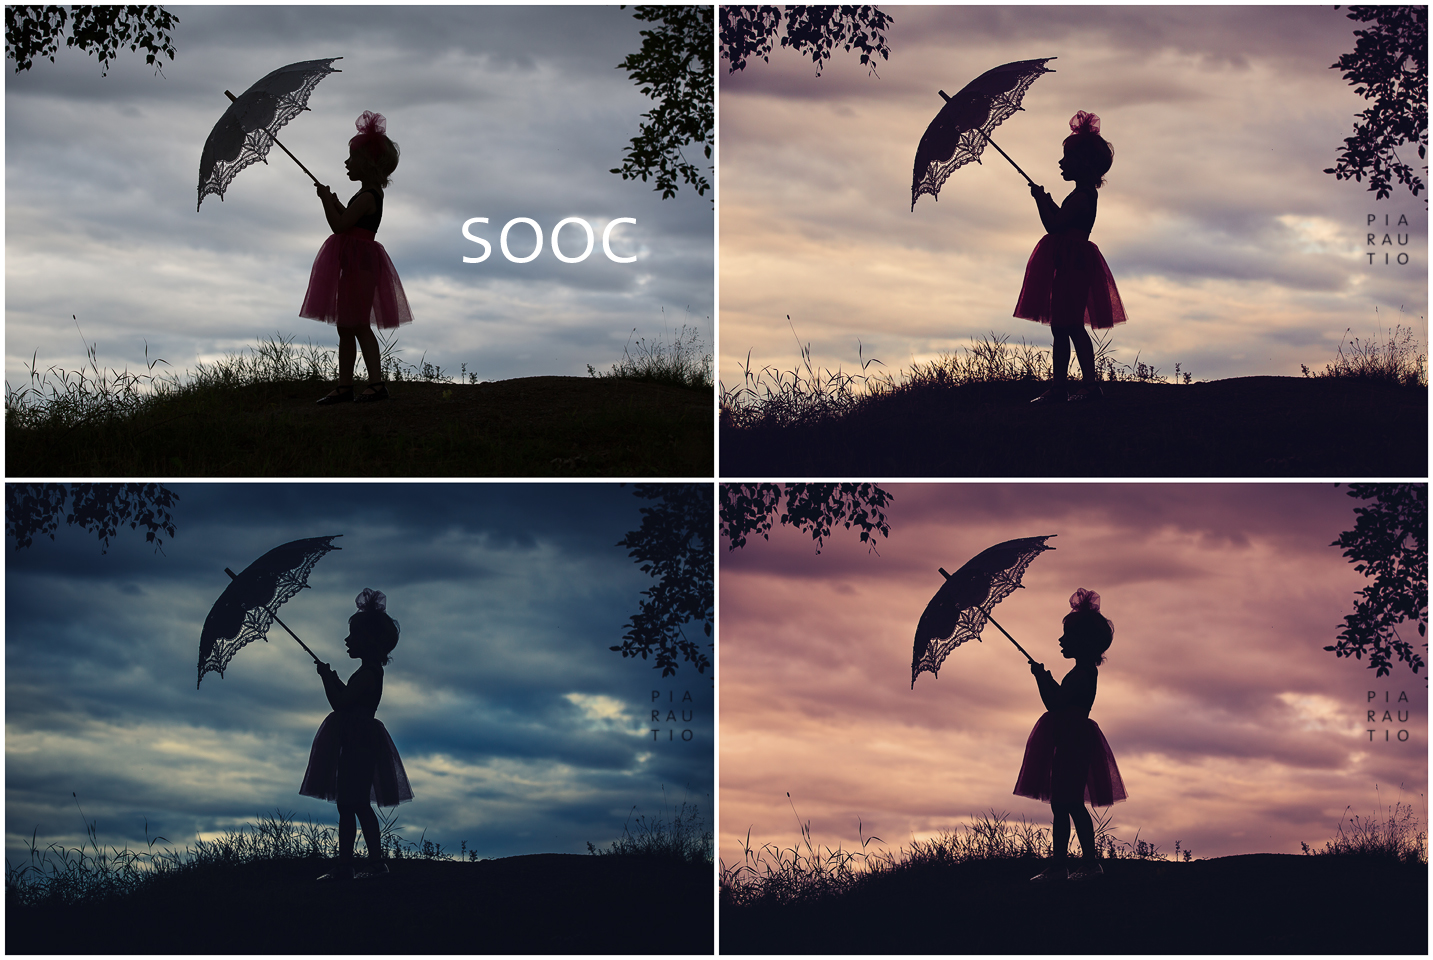 pia_sooc_3edits_parasol Så här redigerar du Super Sweet Silhouette Photos Ritningar Lightroom Presets Photoshop Actions